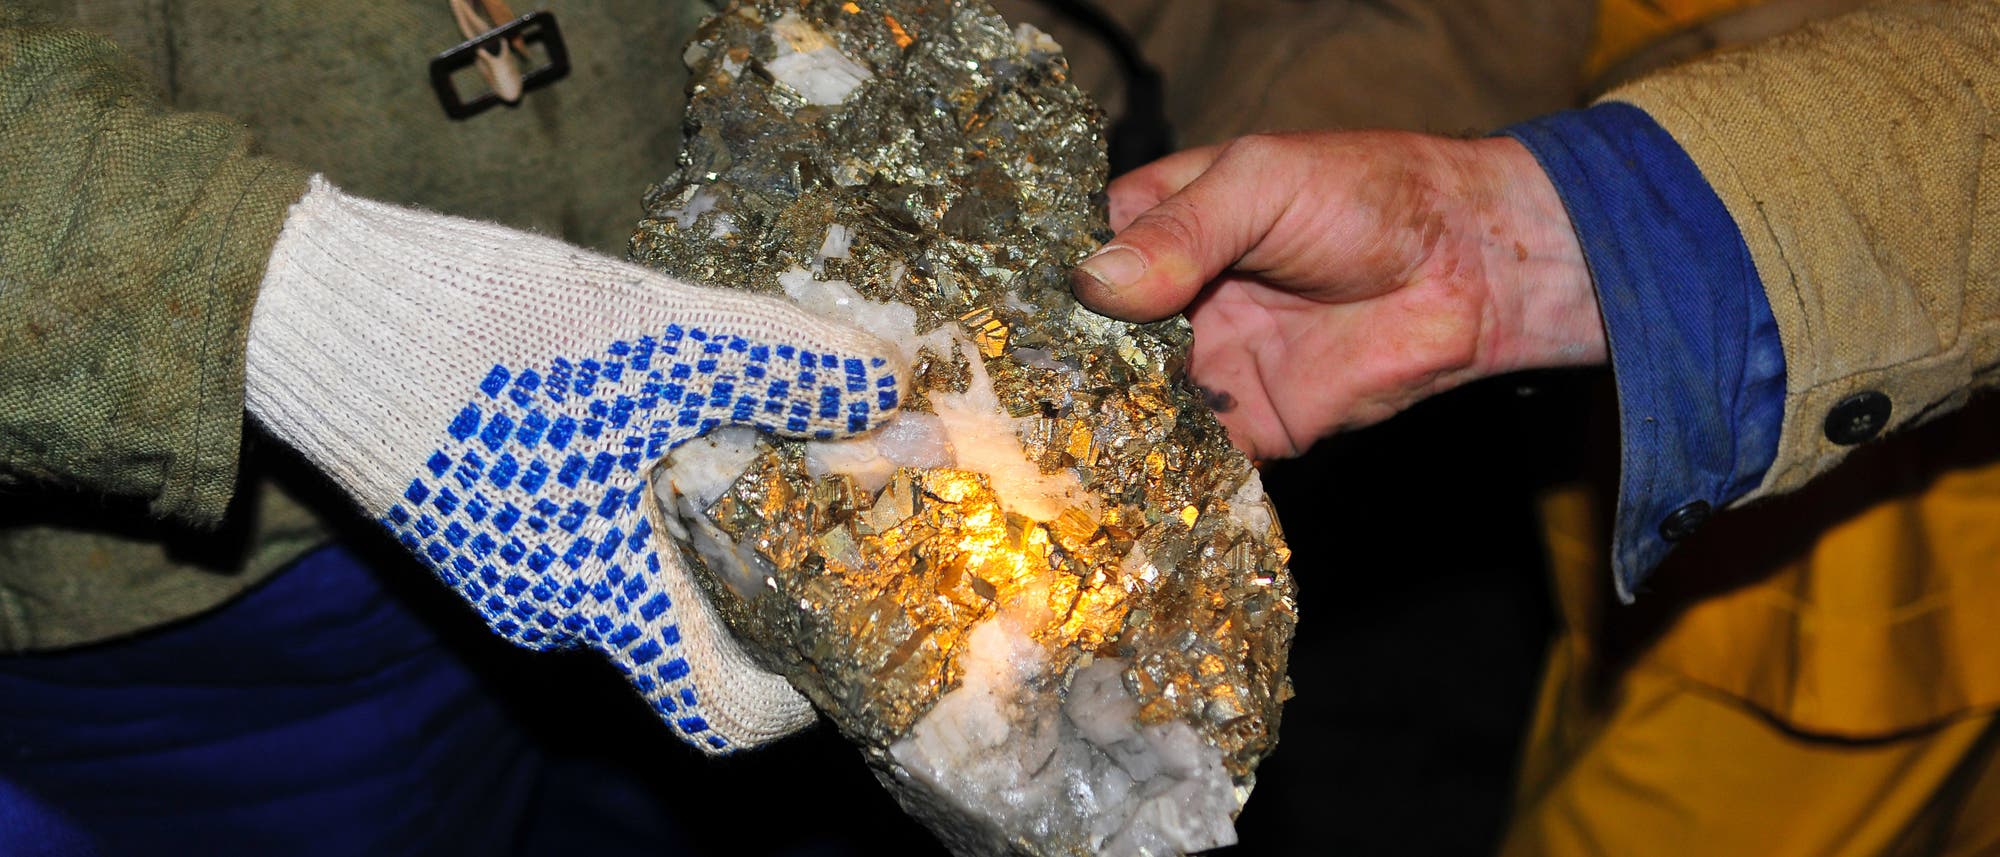 Bergleute halten einen mit Gold überzogenen Erzbrocken in die Kamera.